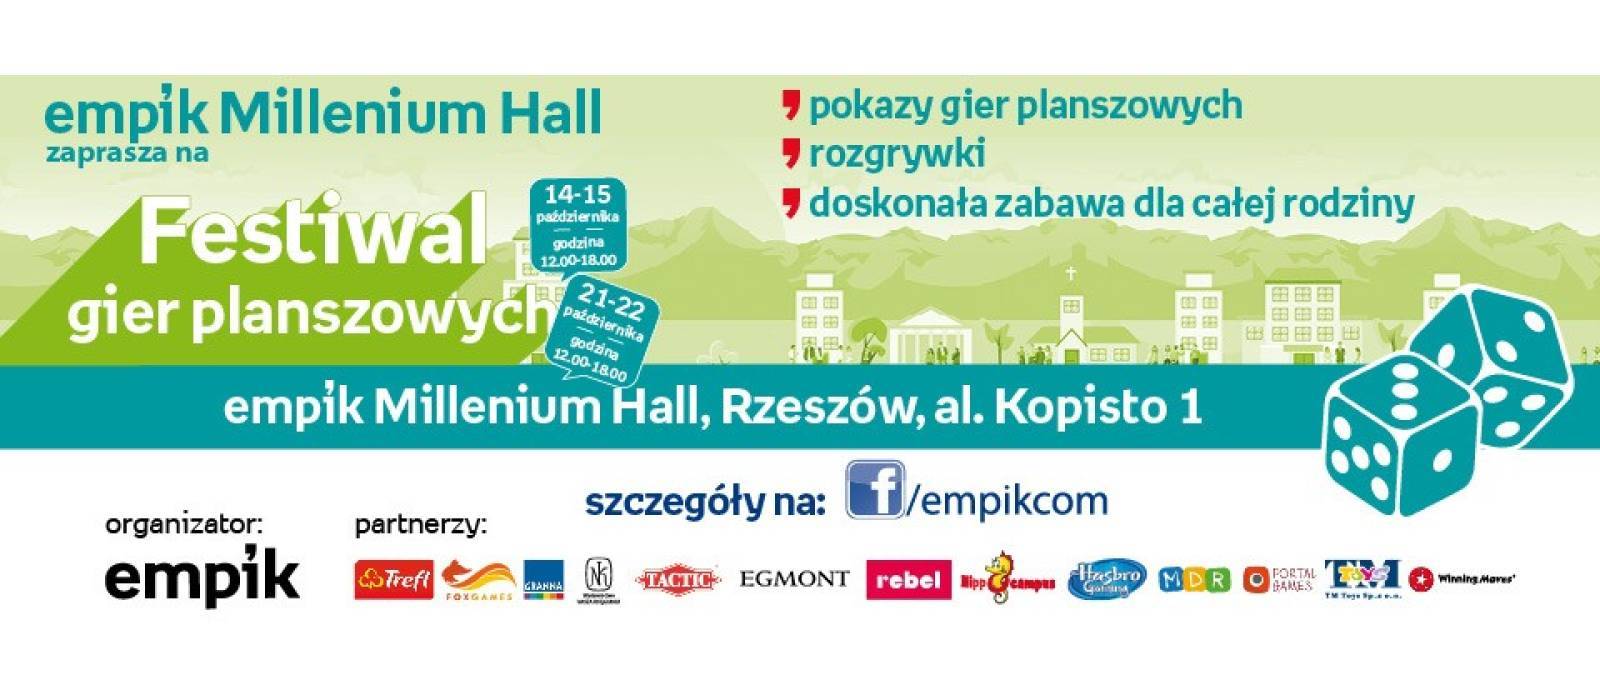 Festiwal Gier Planszowych - 1